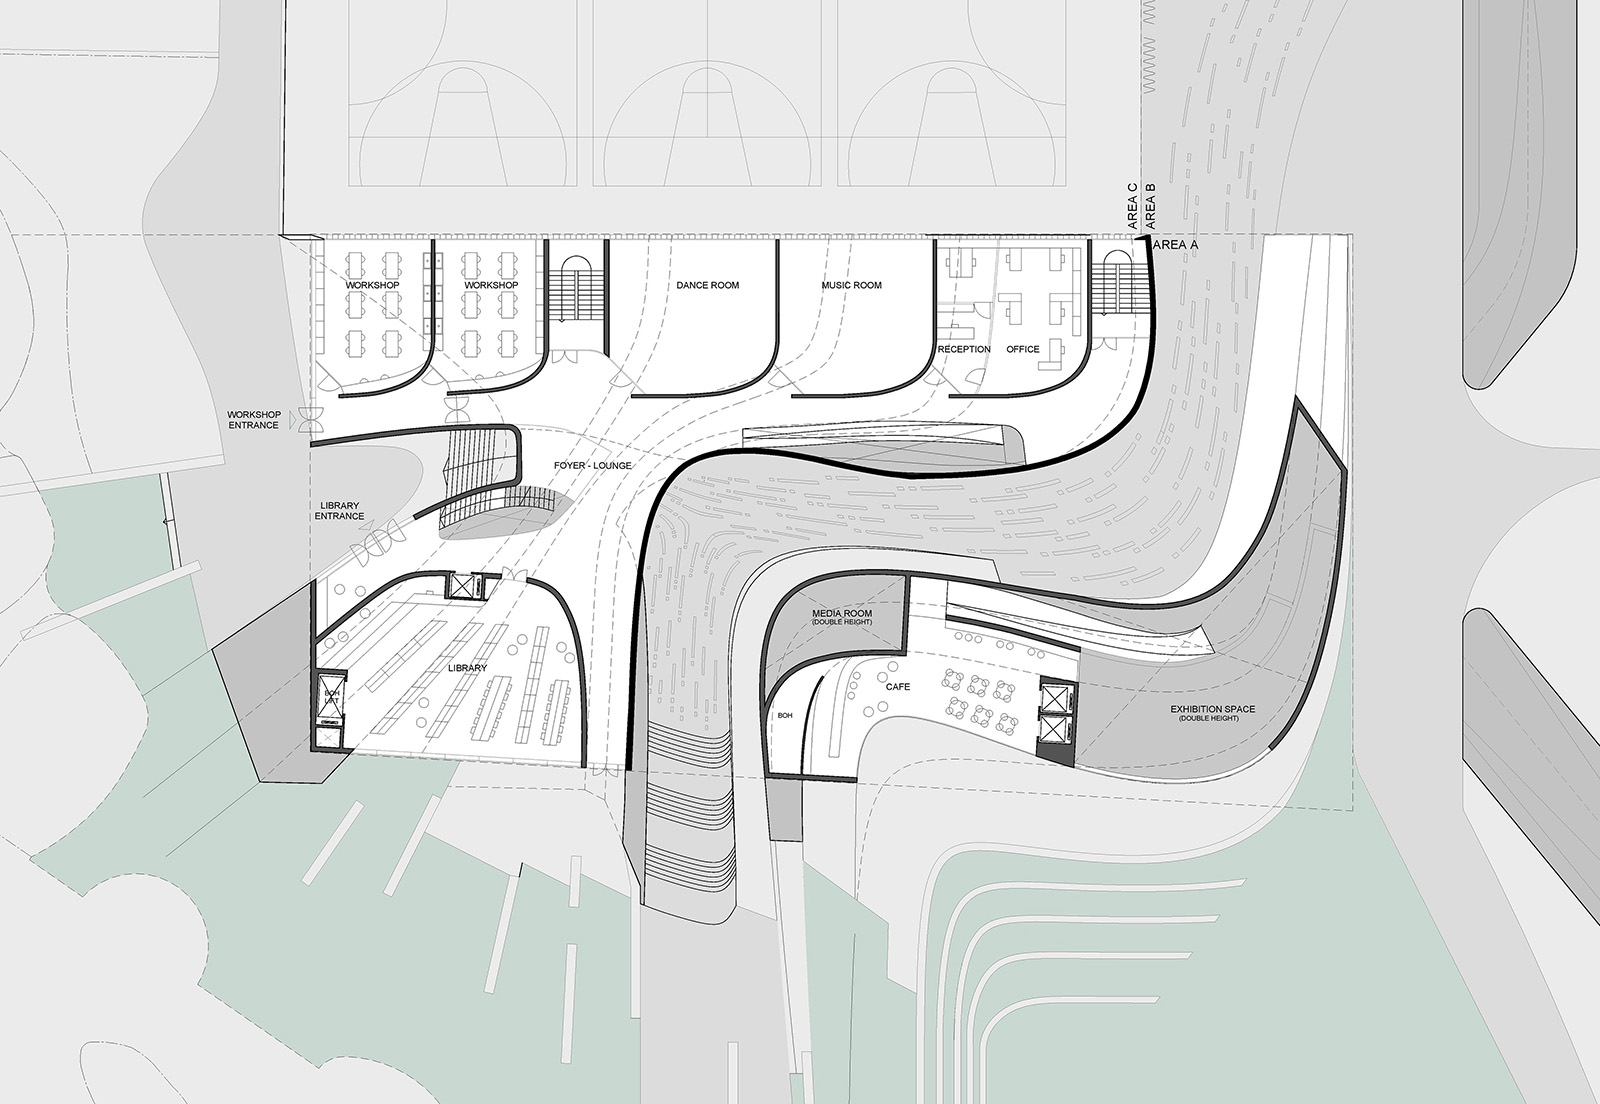 Archisearch Πρόταση για το διαγωνισμό του νέου κτιρίου τεχνών | από τους Degree Zero Architects και Musa Musa Studio